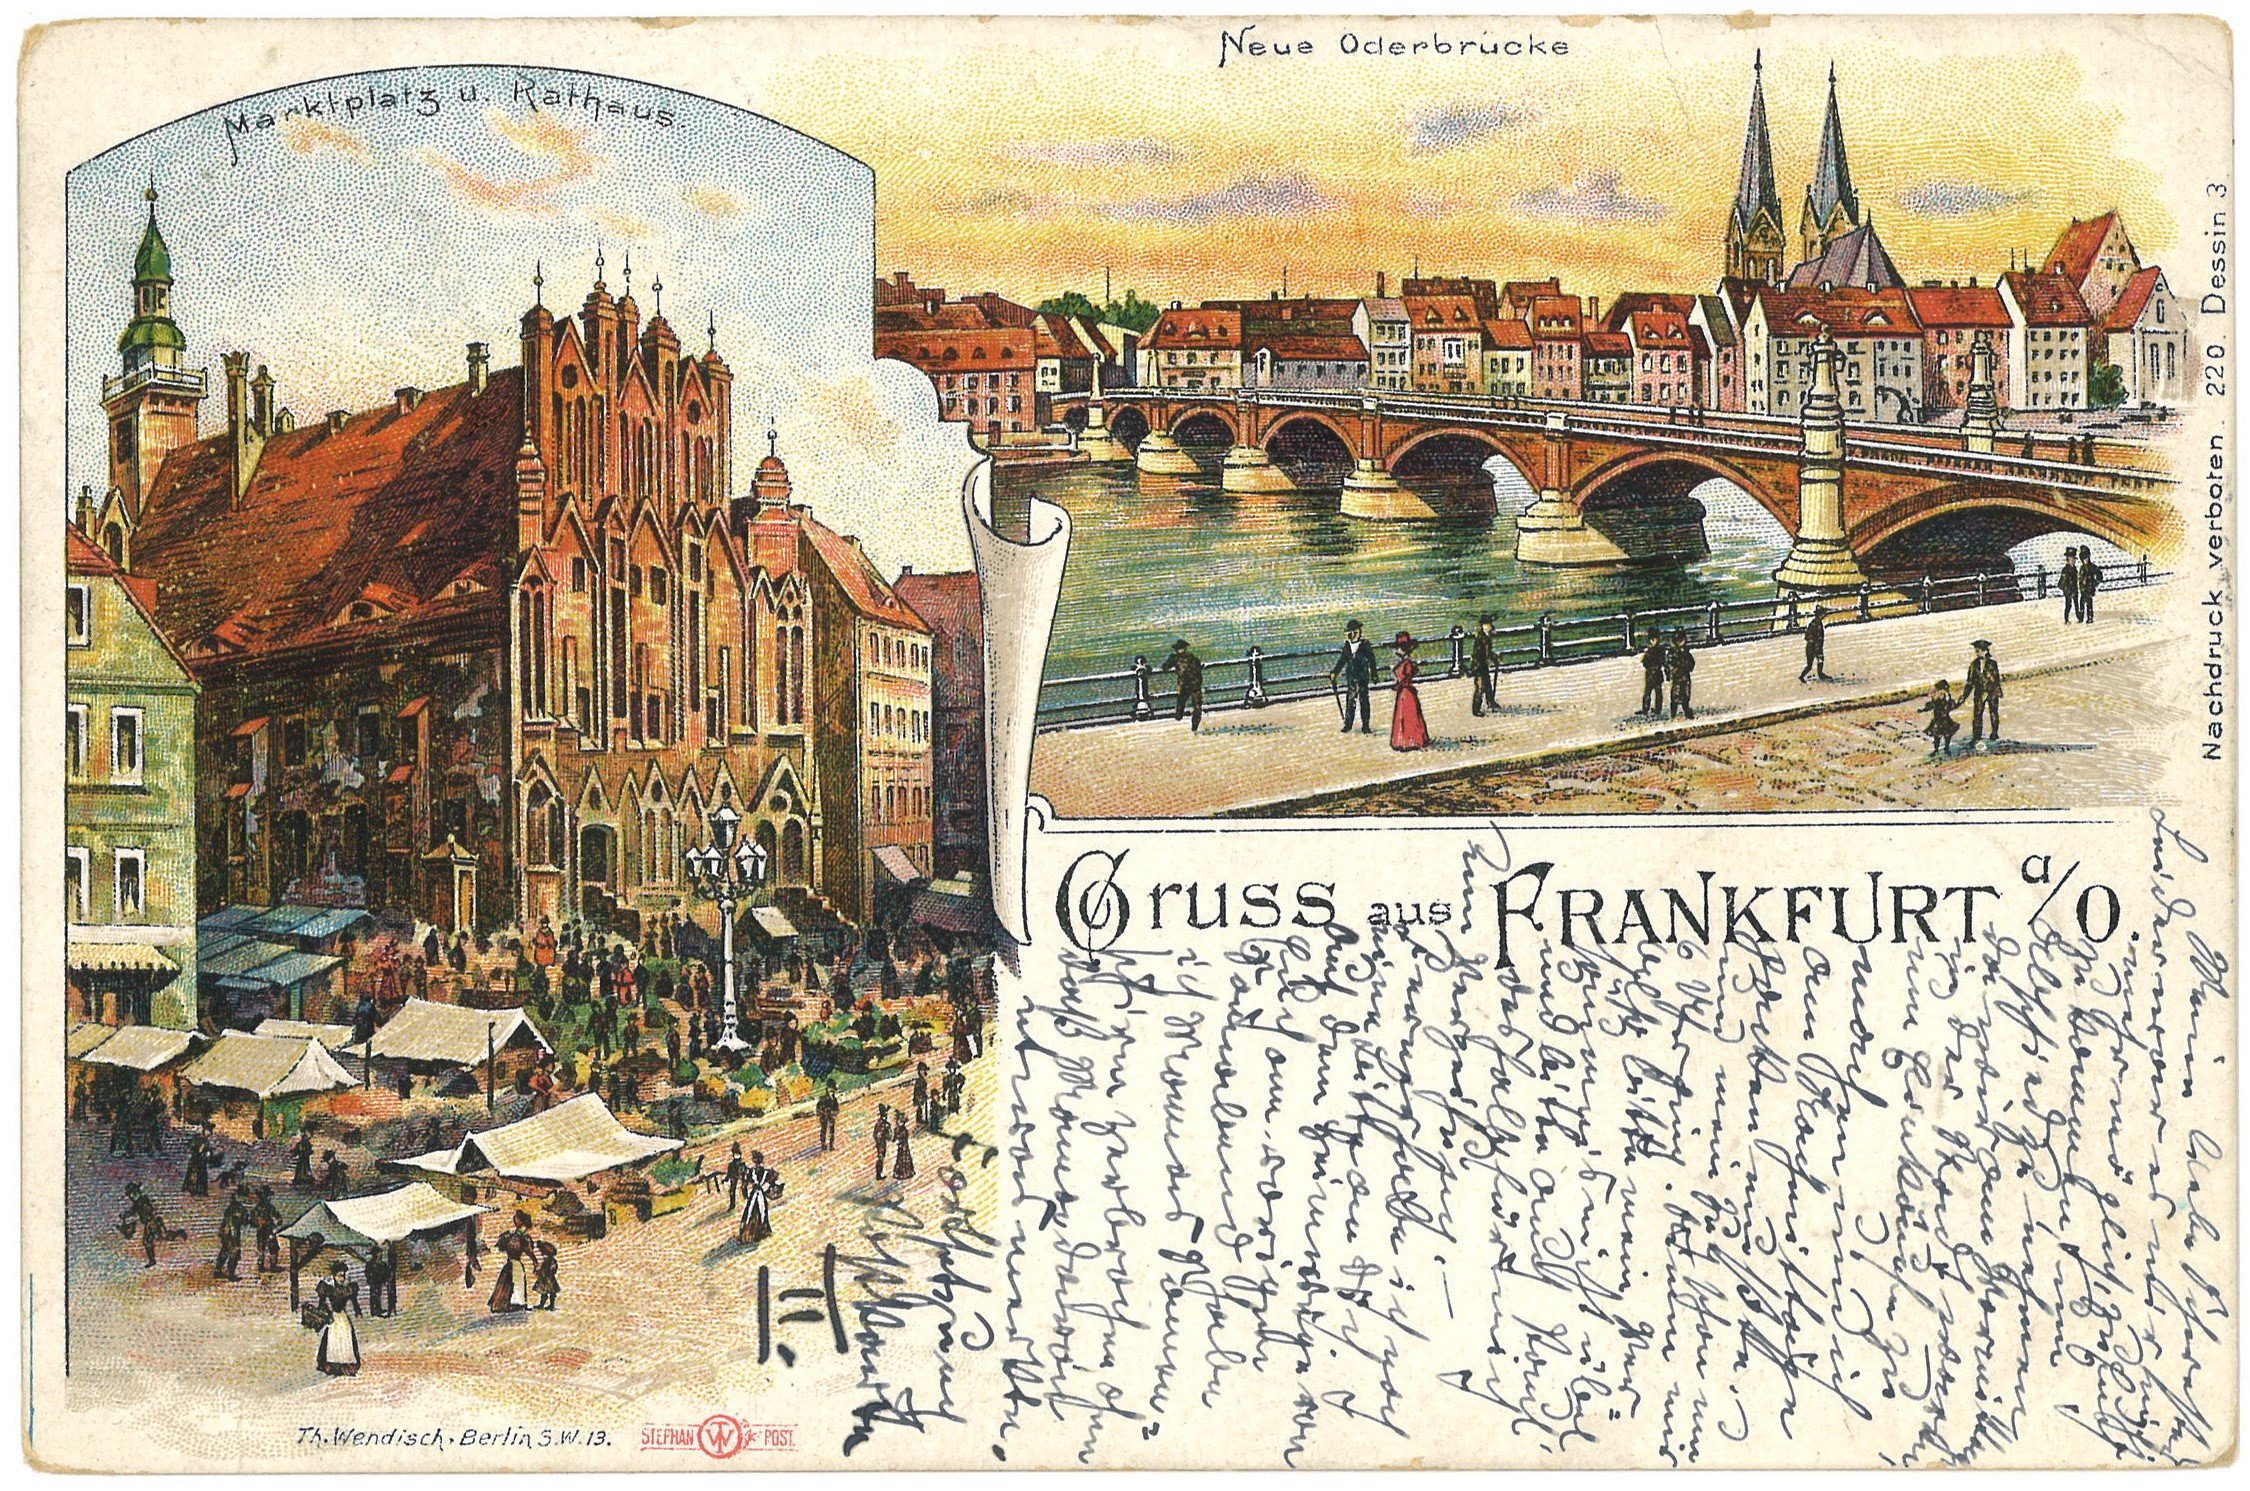 Frankfurt (Oder): Zwei Ansichten (Landesgeschichtliche Vereinigung für die Mark Brandenburg e.V., Archiv CC BY)